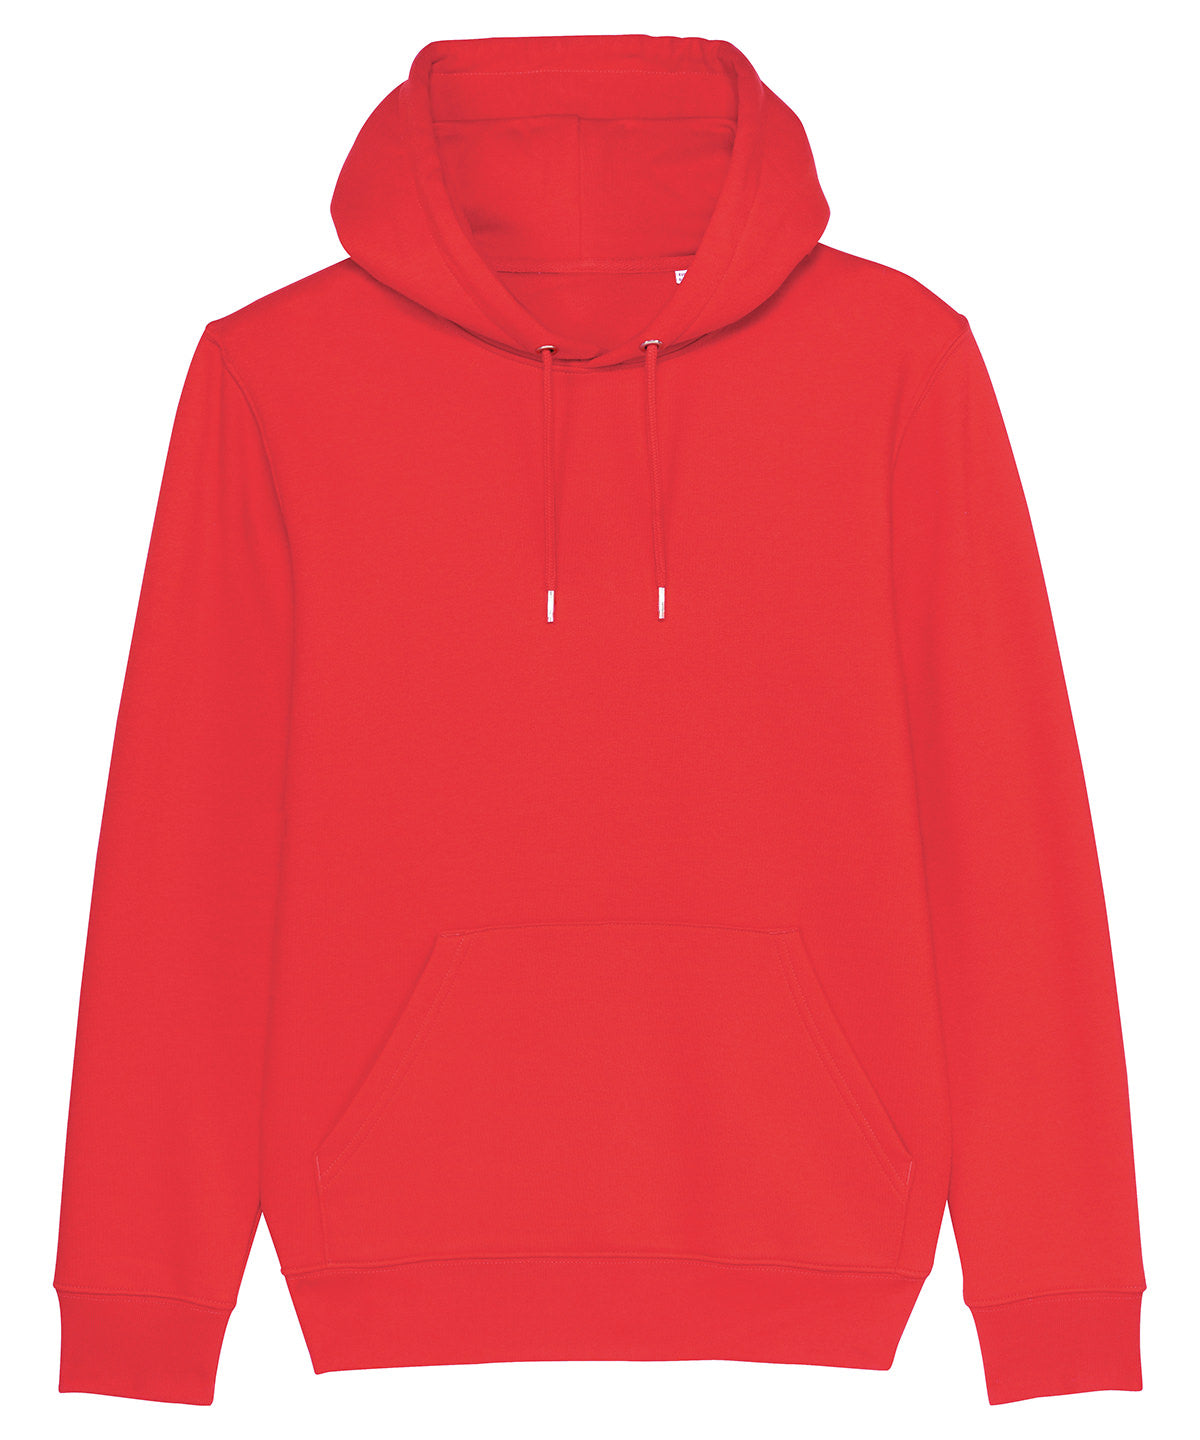 Unisex Cruiser iconic hoodie sweatshirt